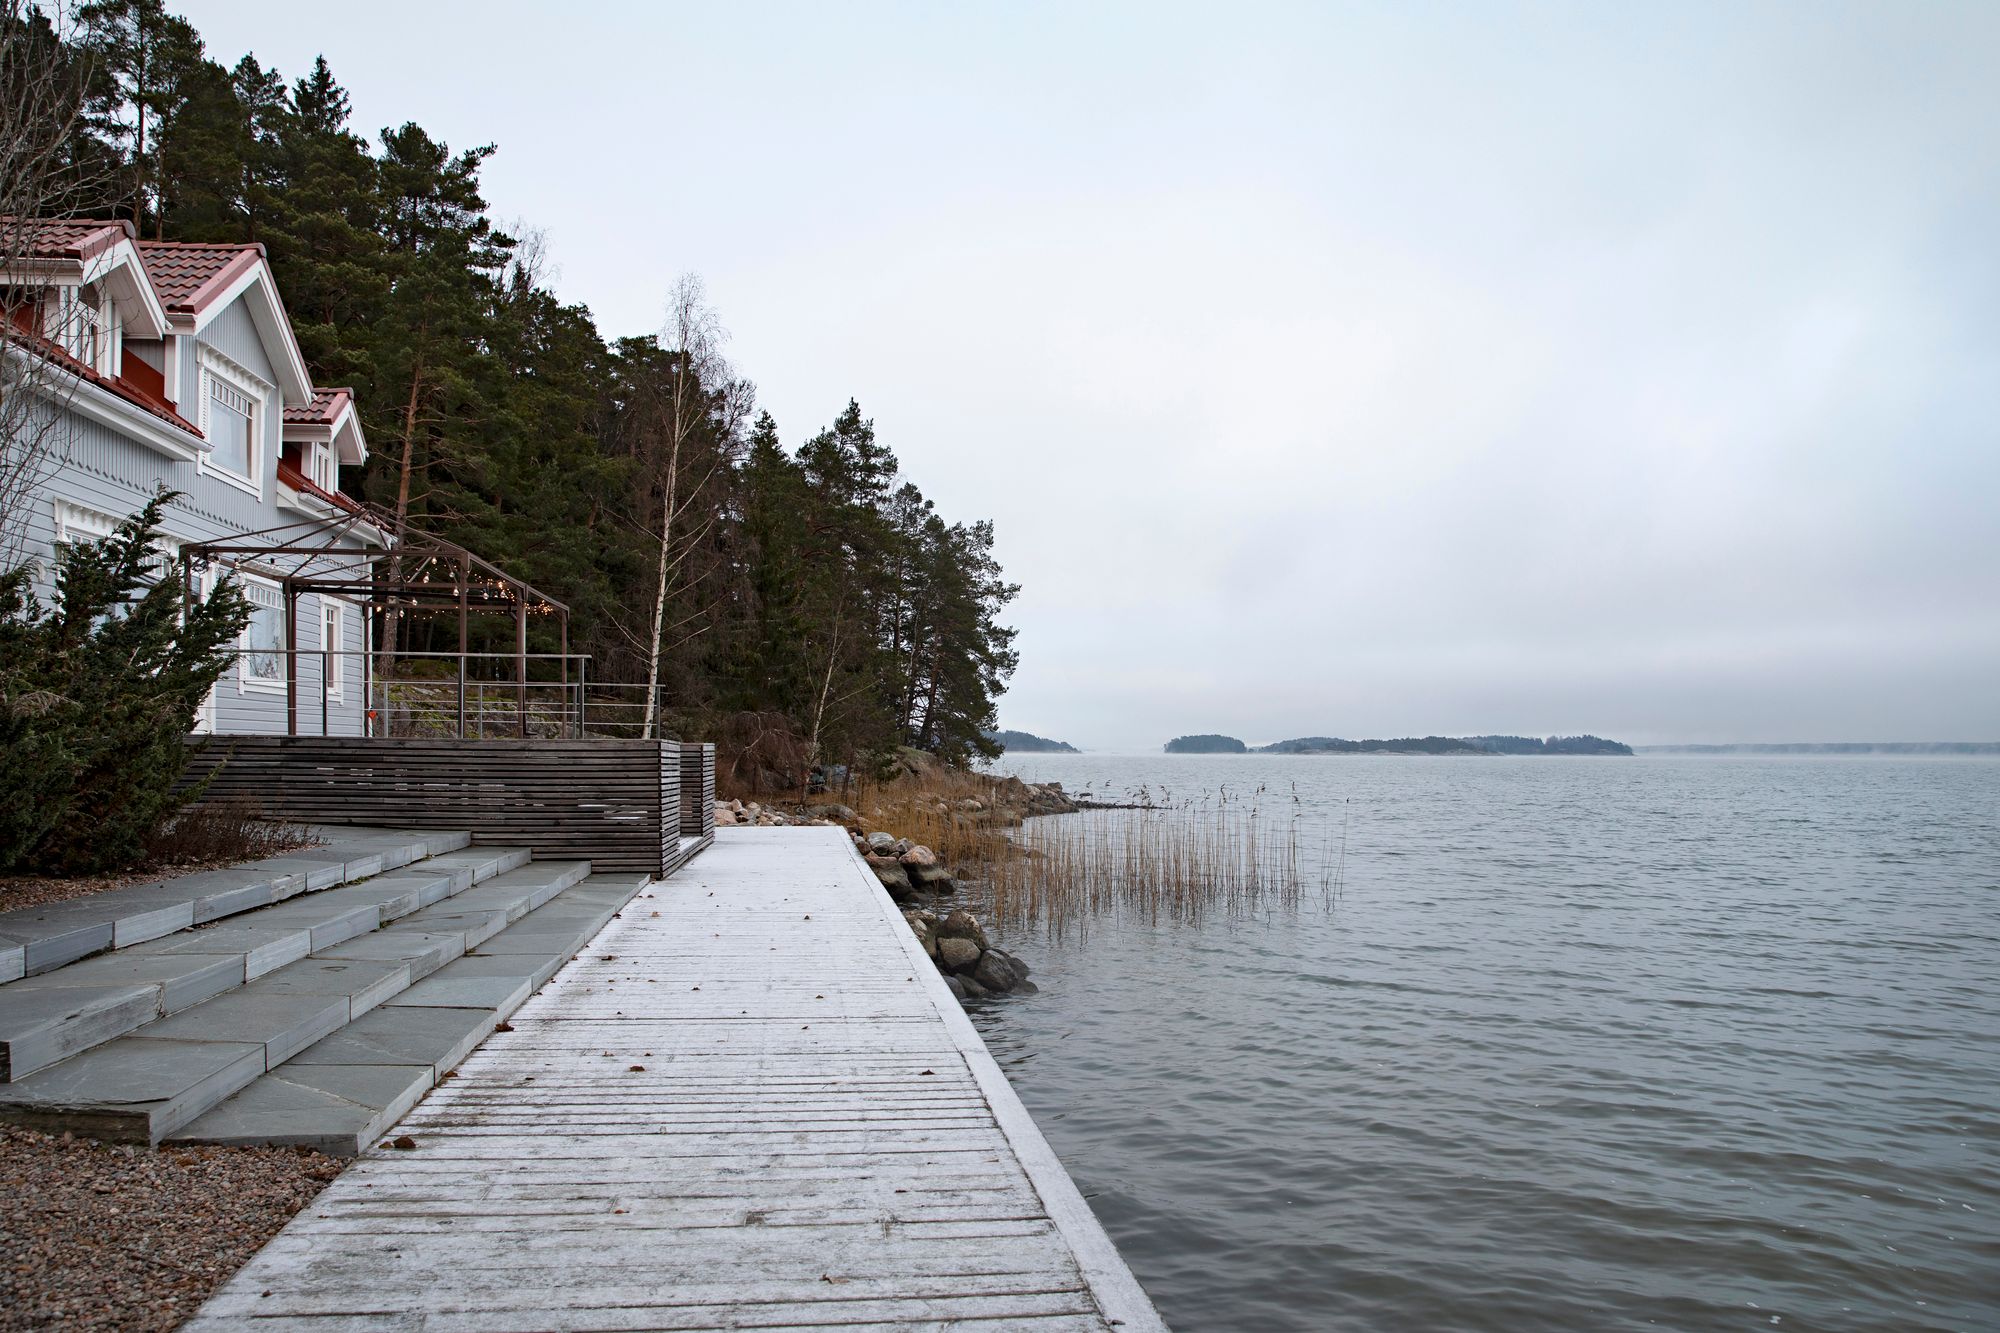 Etenkin kesäisin kovassa käytössä olevalta terassilta aukeaa upea merimaisema saaristoon. © Suvi Elo